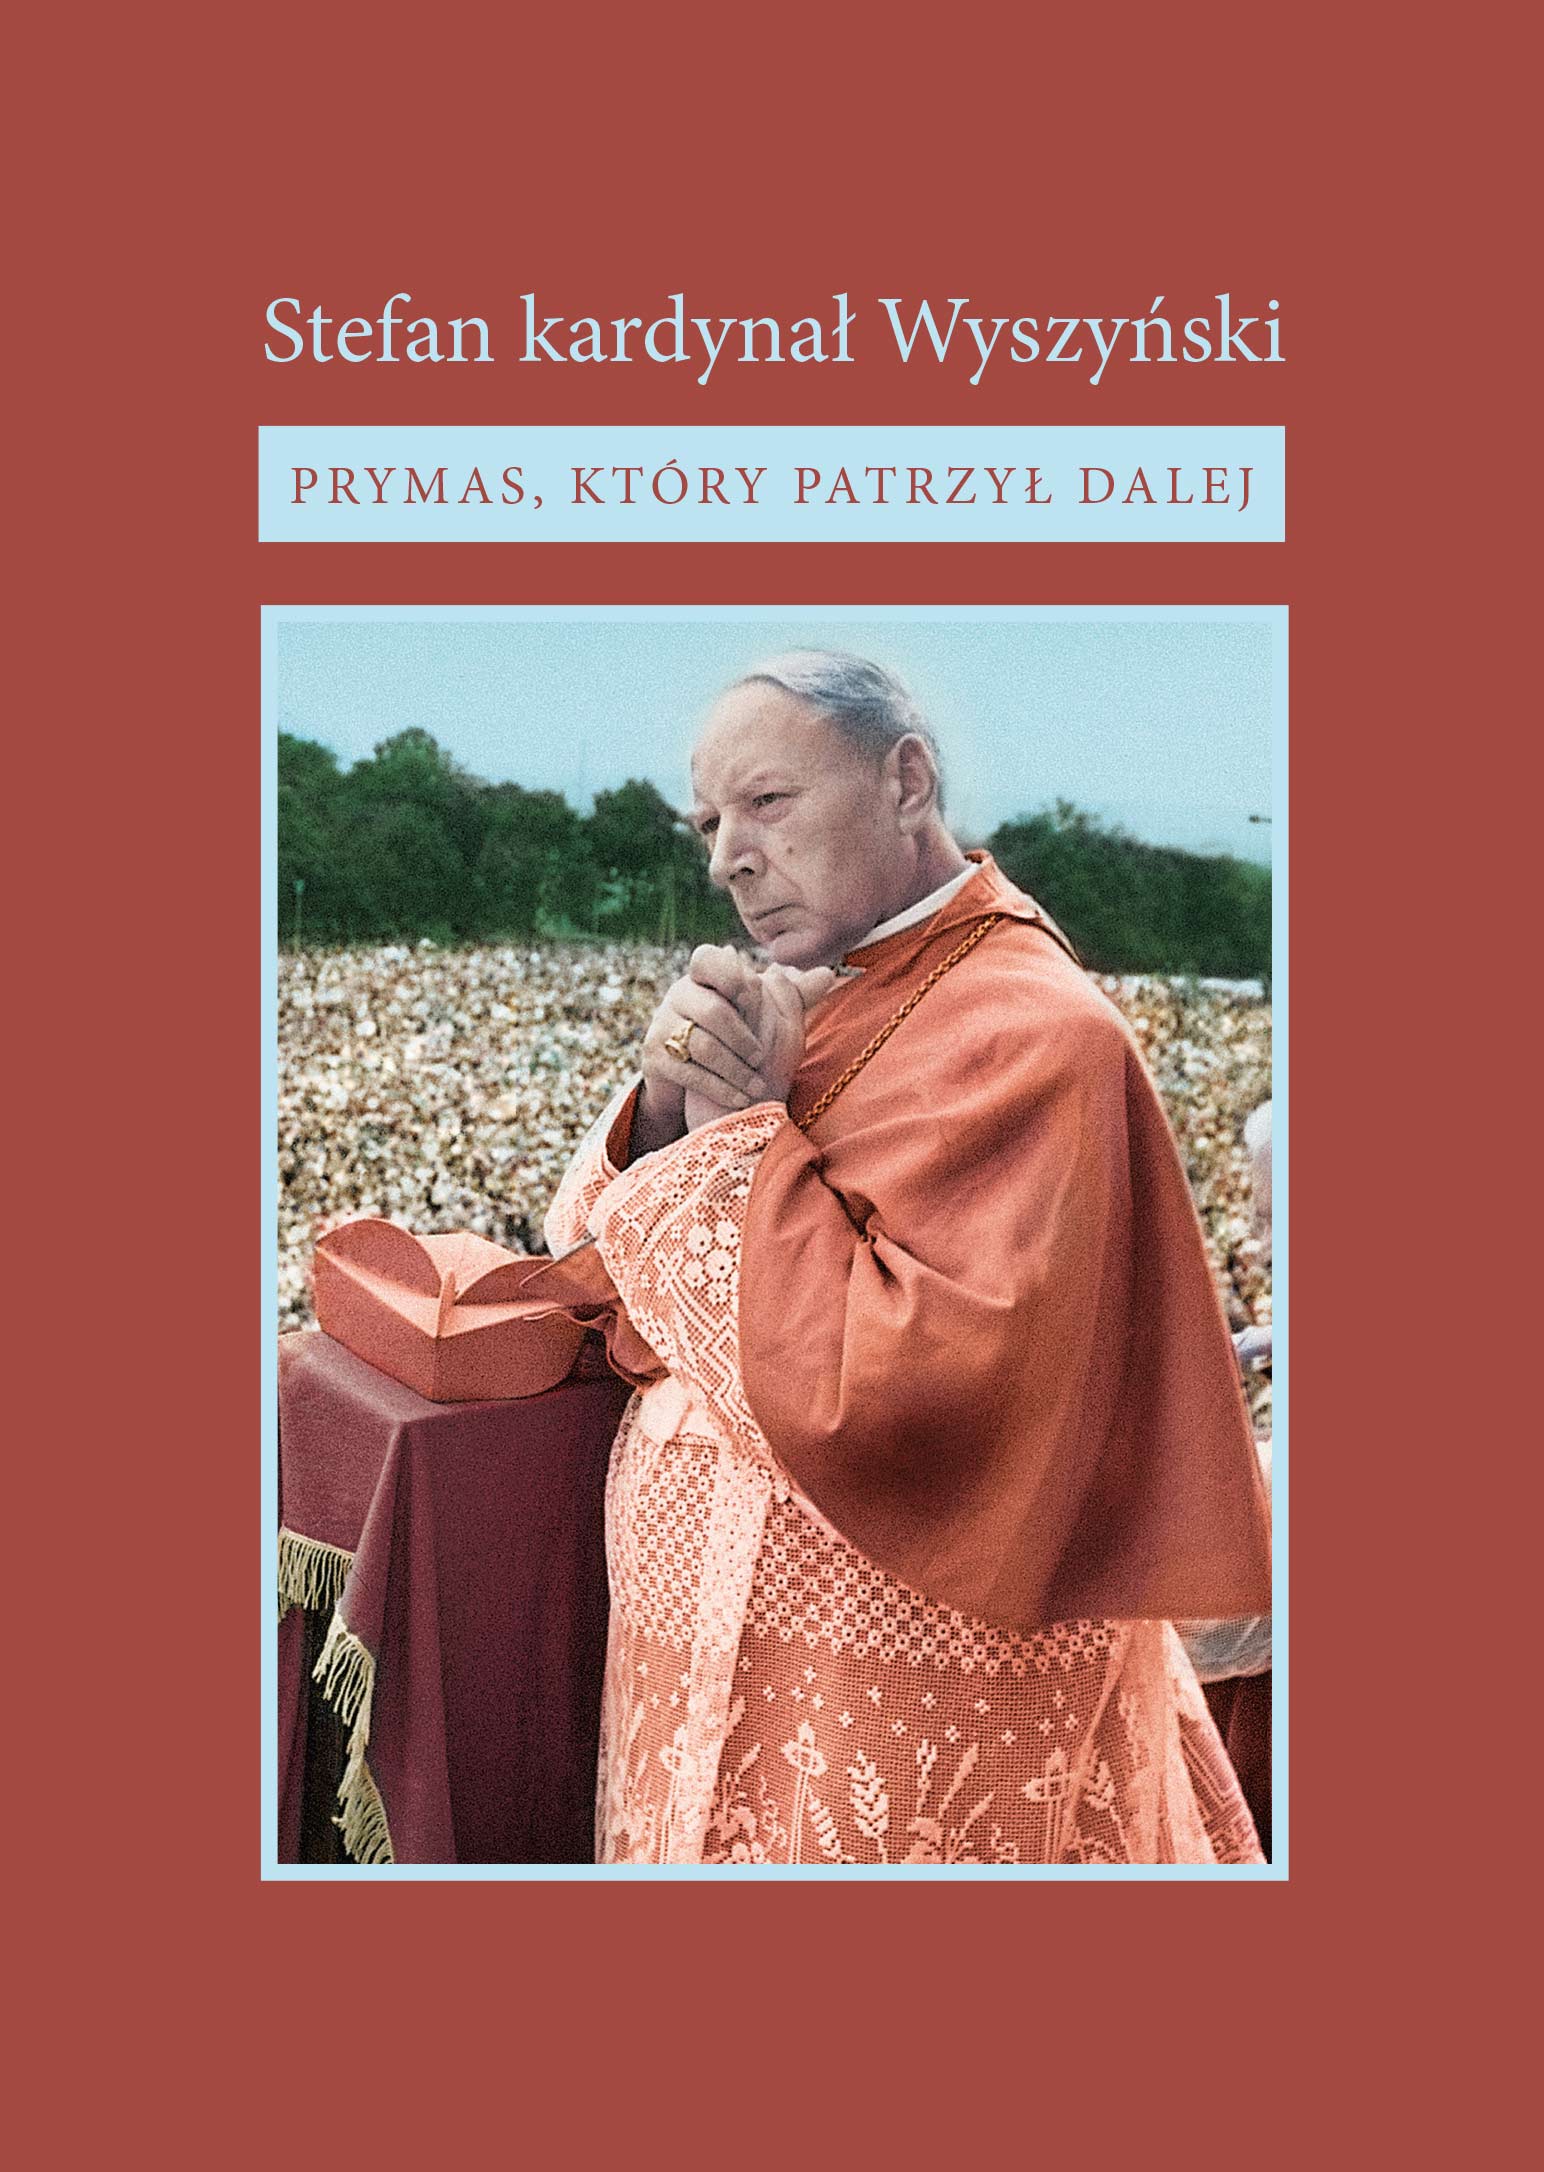 Stefan kardynał Wyszyński - Prymas, który patrzył dalej, DVD, Instytut Papieża Jana Pawła II, Warszawa 2020.